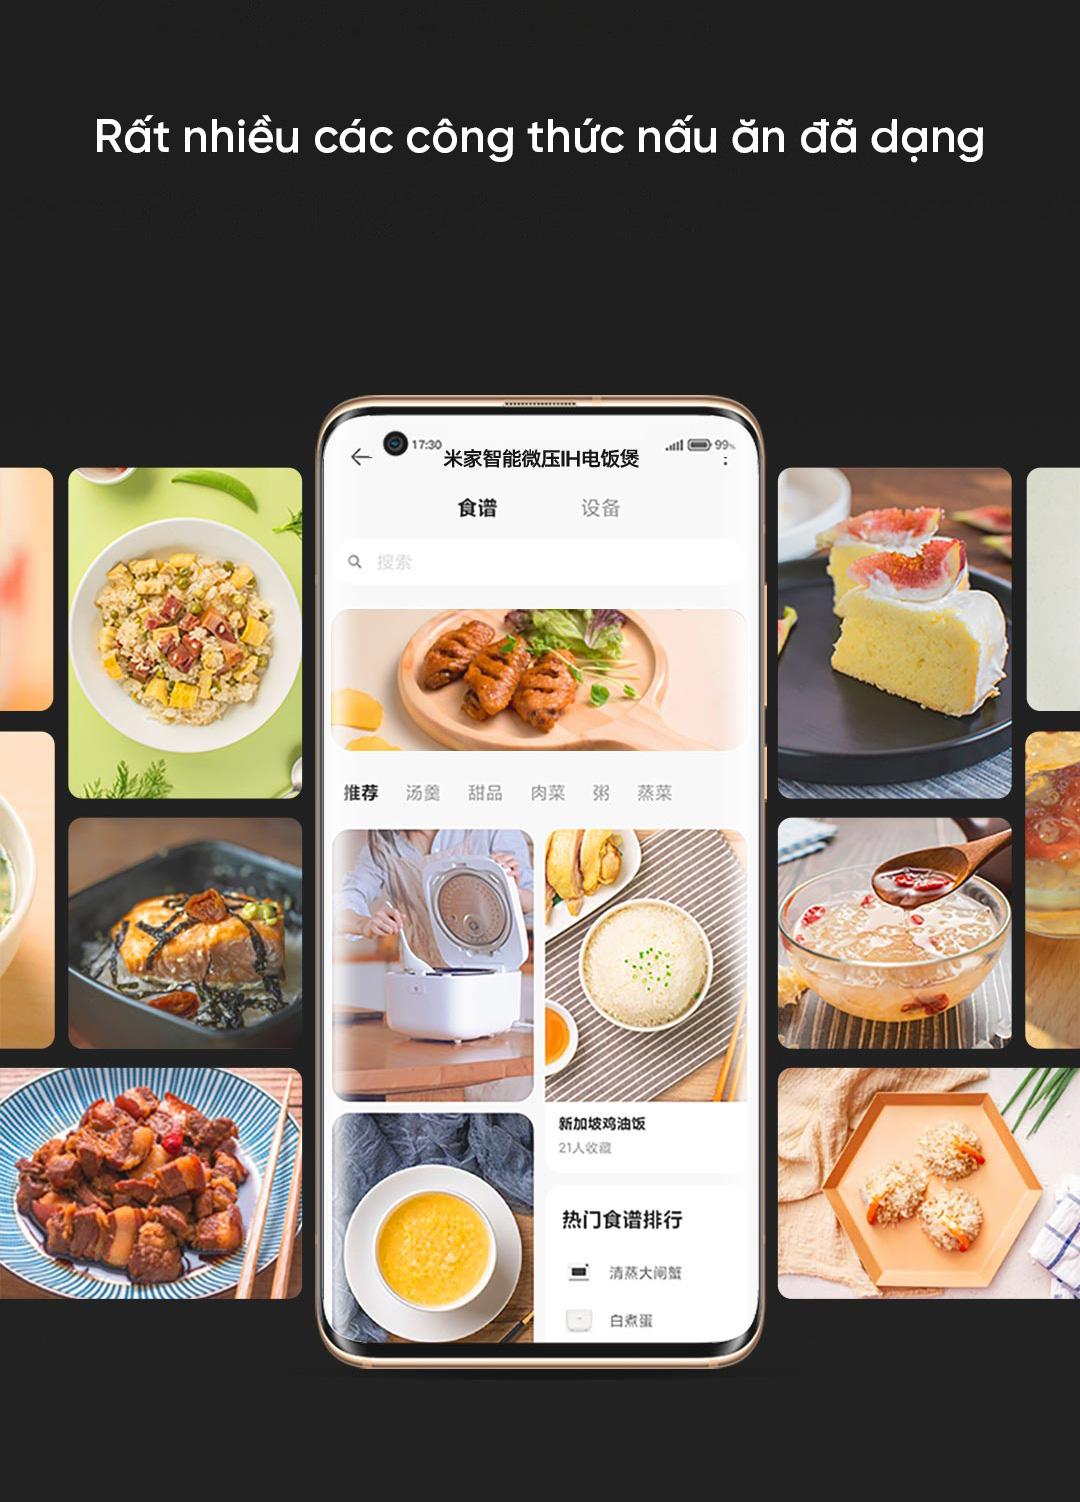 Công thức nấu ăn đa dạng khi kết nối app Mi Home